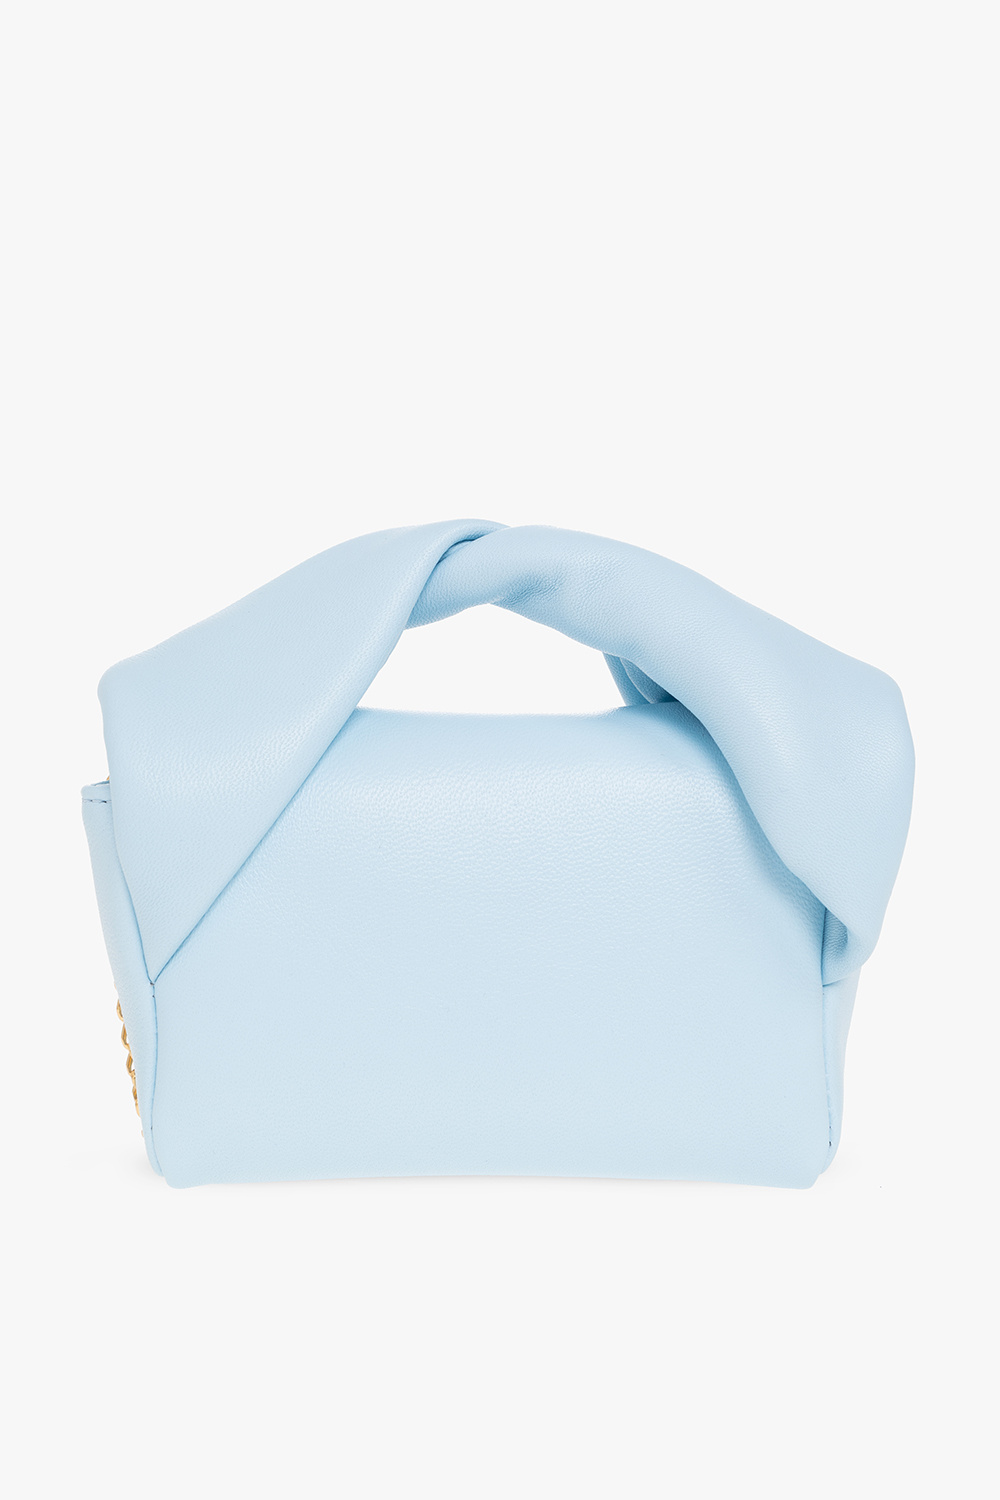 JW Anderson ‘Twister Nano’ shoulder bag